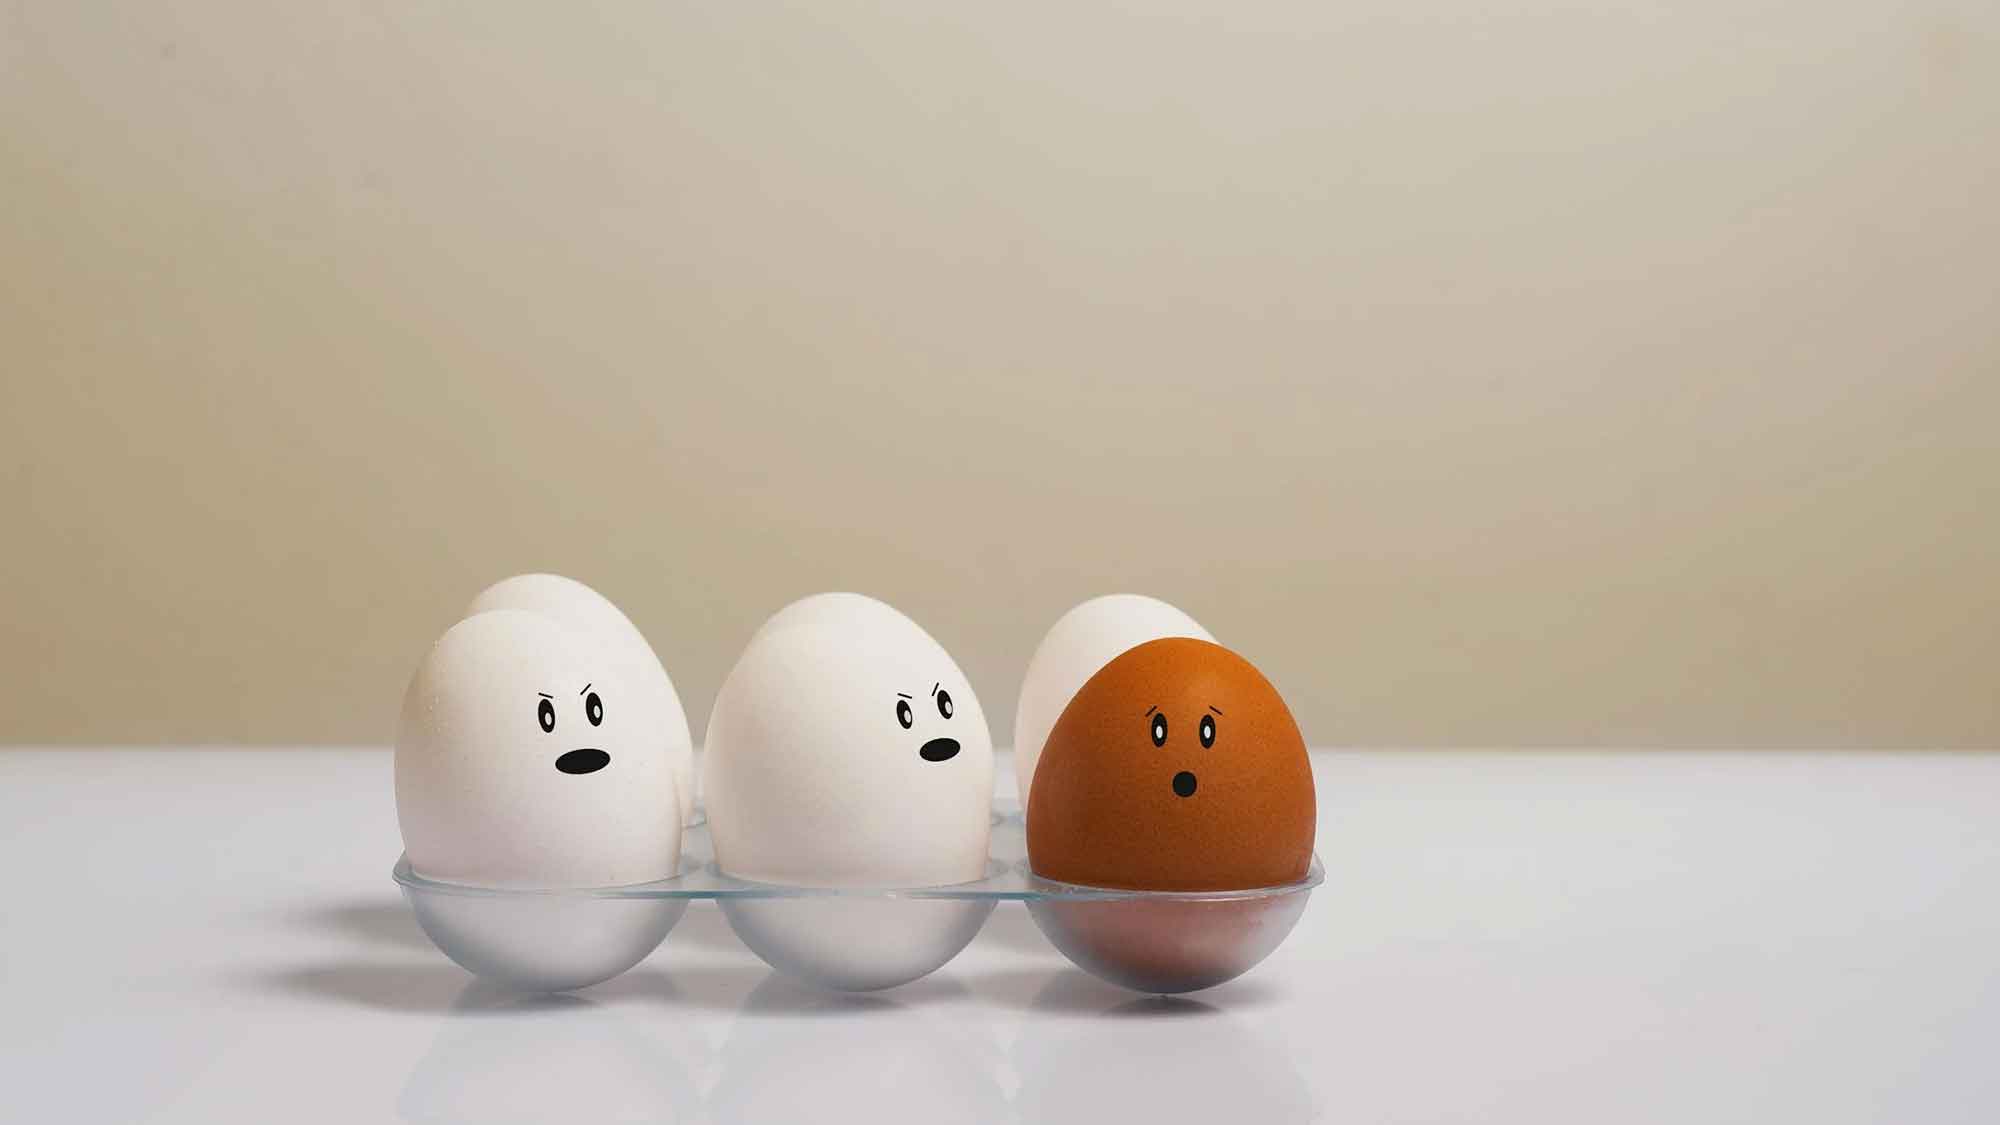 »Öko Test«: Eier im Test – gute Qualität, mangelndes Tierwohl